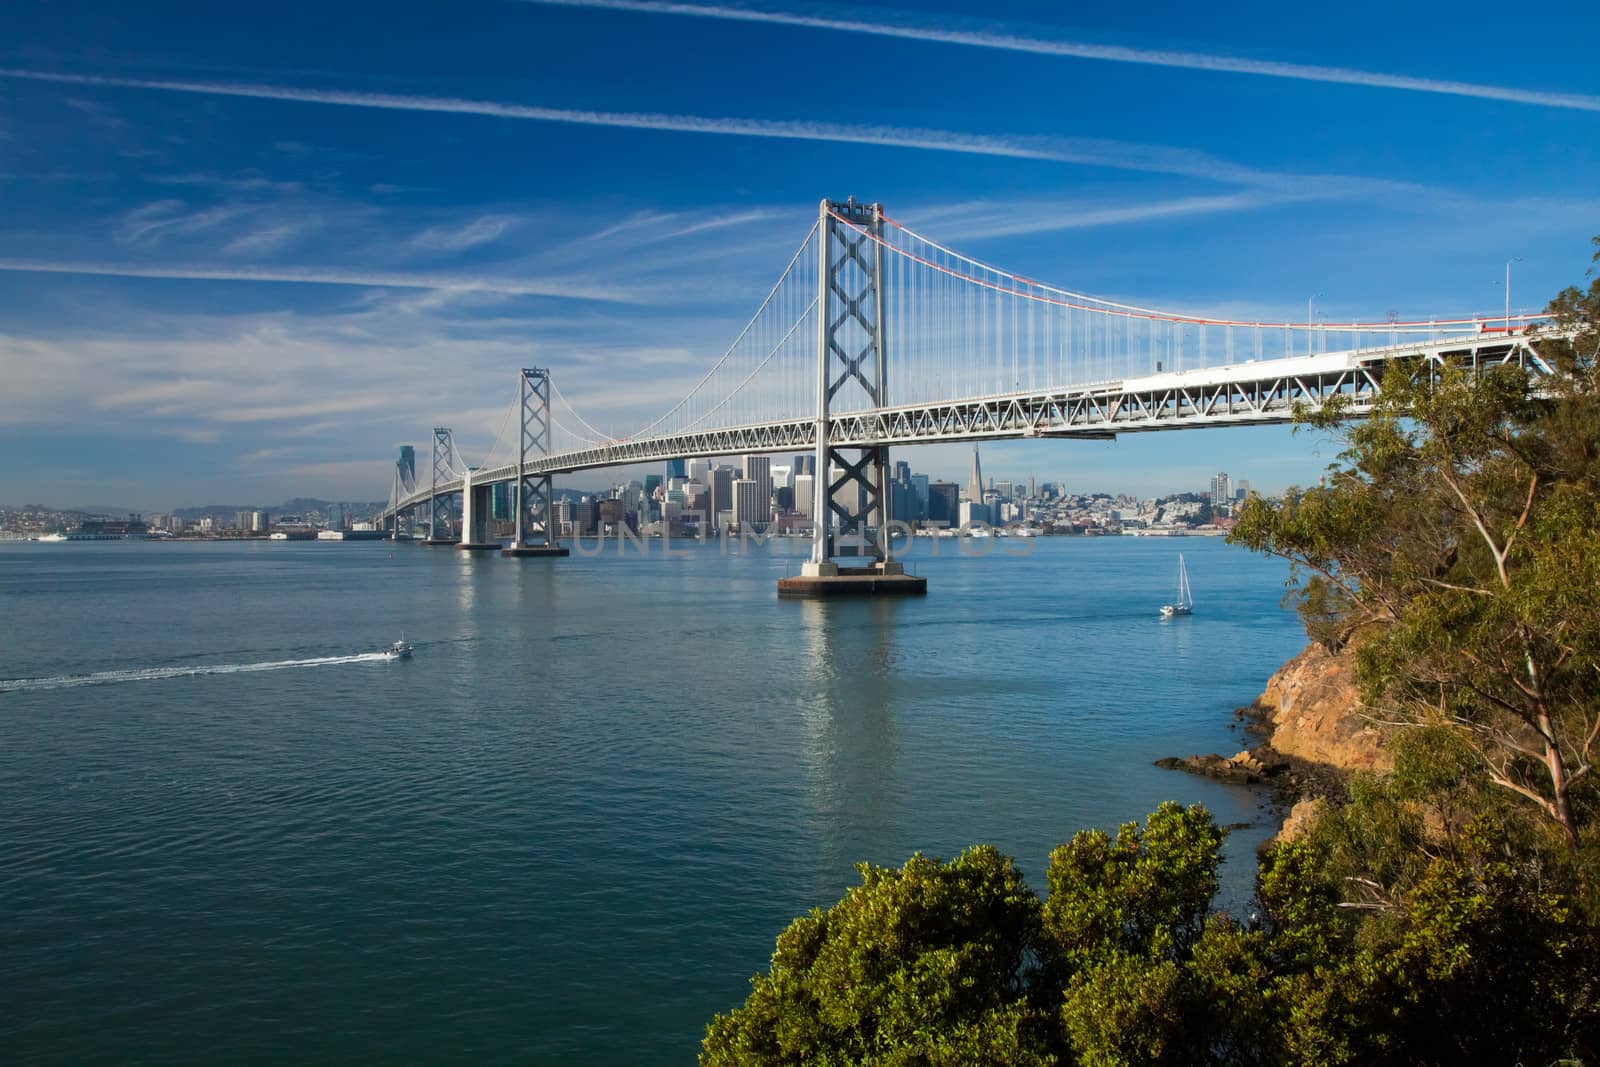 San Francisco Bay bridge in the morning